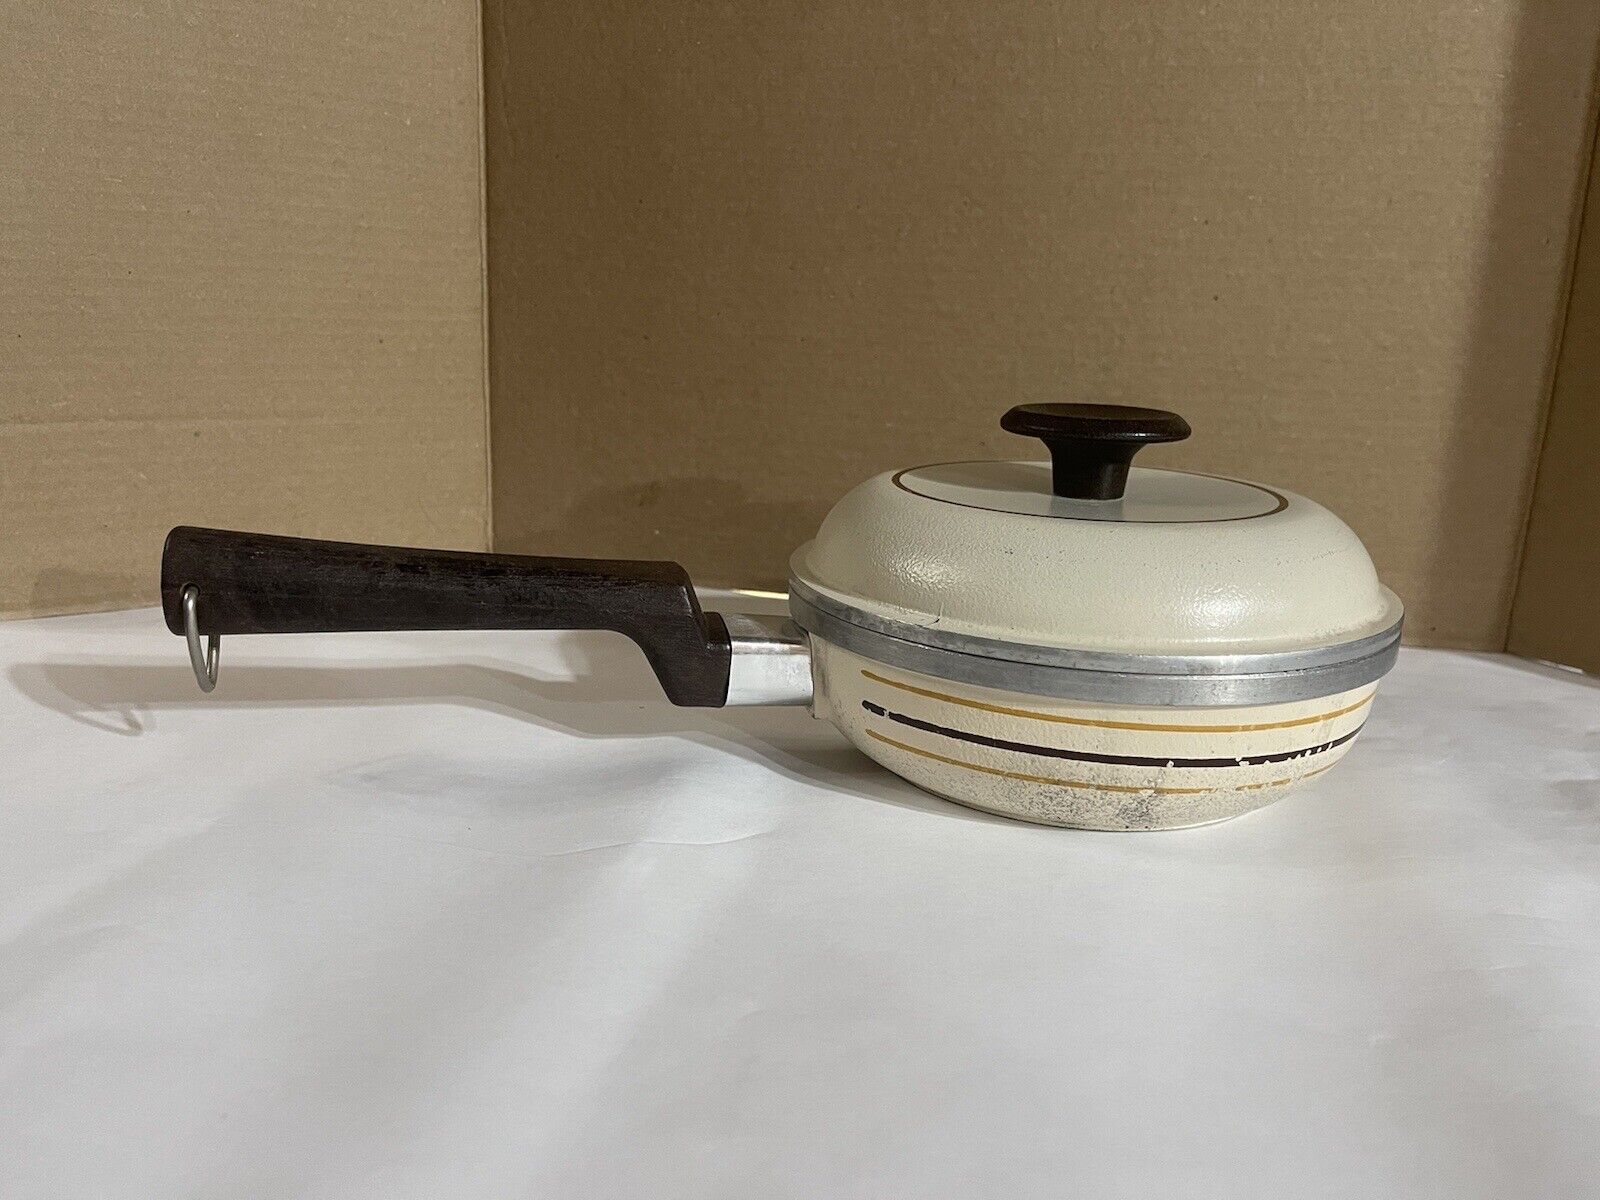 Vintage Regal Ware Cast Aluminum 2 quart pot with lid, cream color w/ stripes